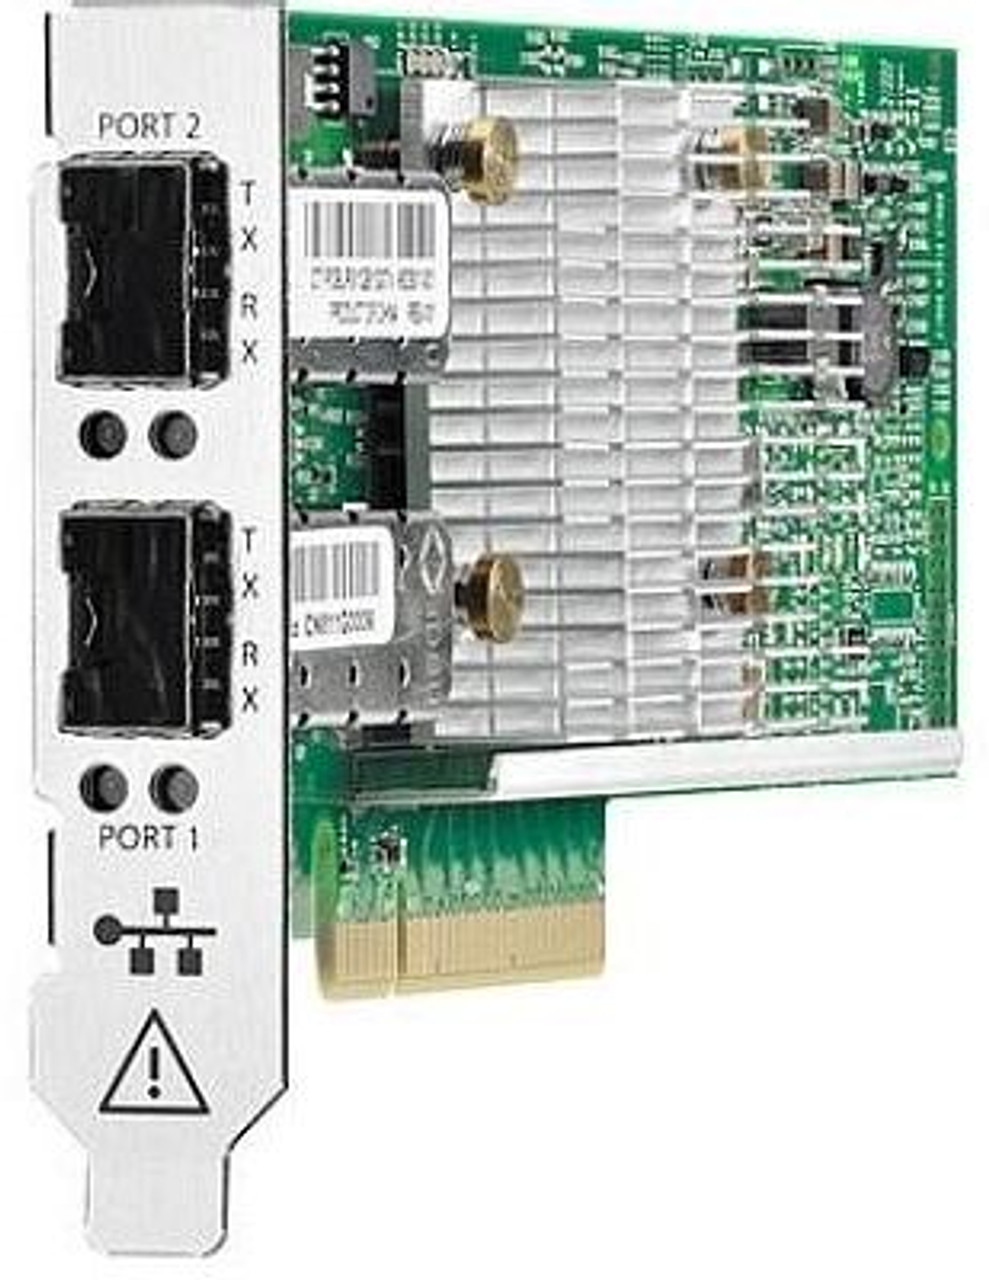 412648-B21 HP Carte réseau à double port NC360T PCI-E Gigabit